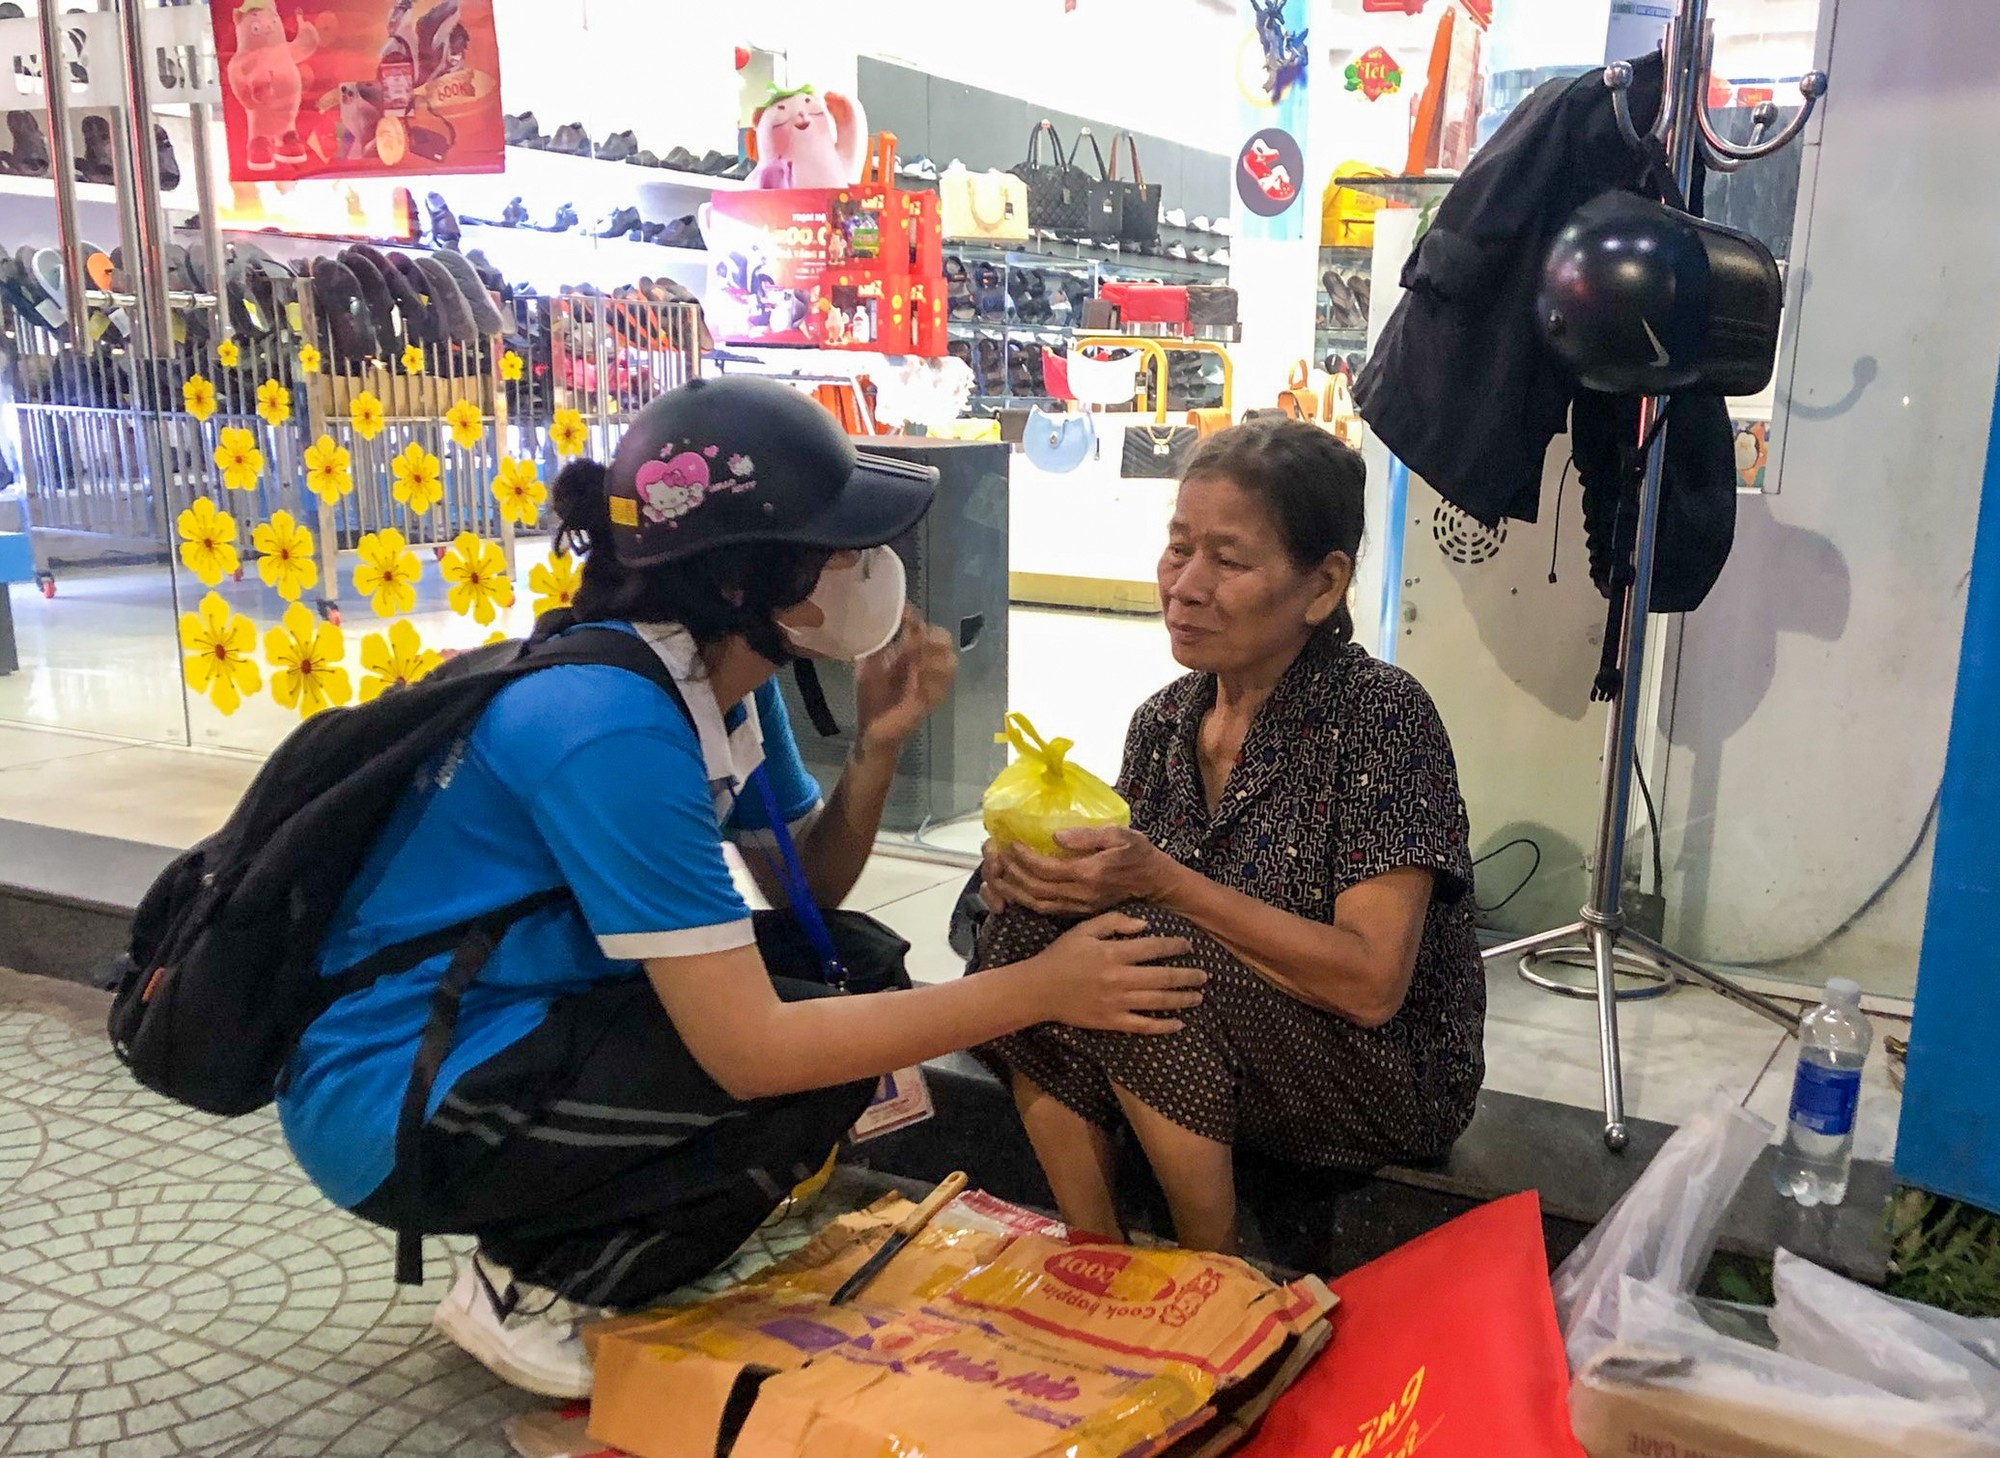 Ân cần hỏi thăm và gửi phần cháo cho một cụ bà vô gia cư trước Nhà sách Phú Xuân tại đường Trần Hưng Đạo, TP Huế.